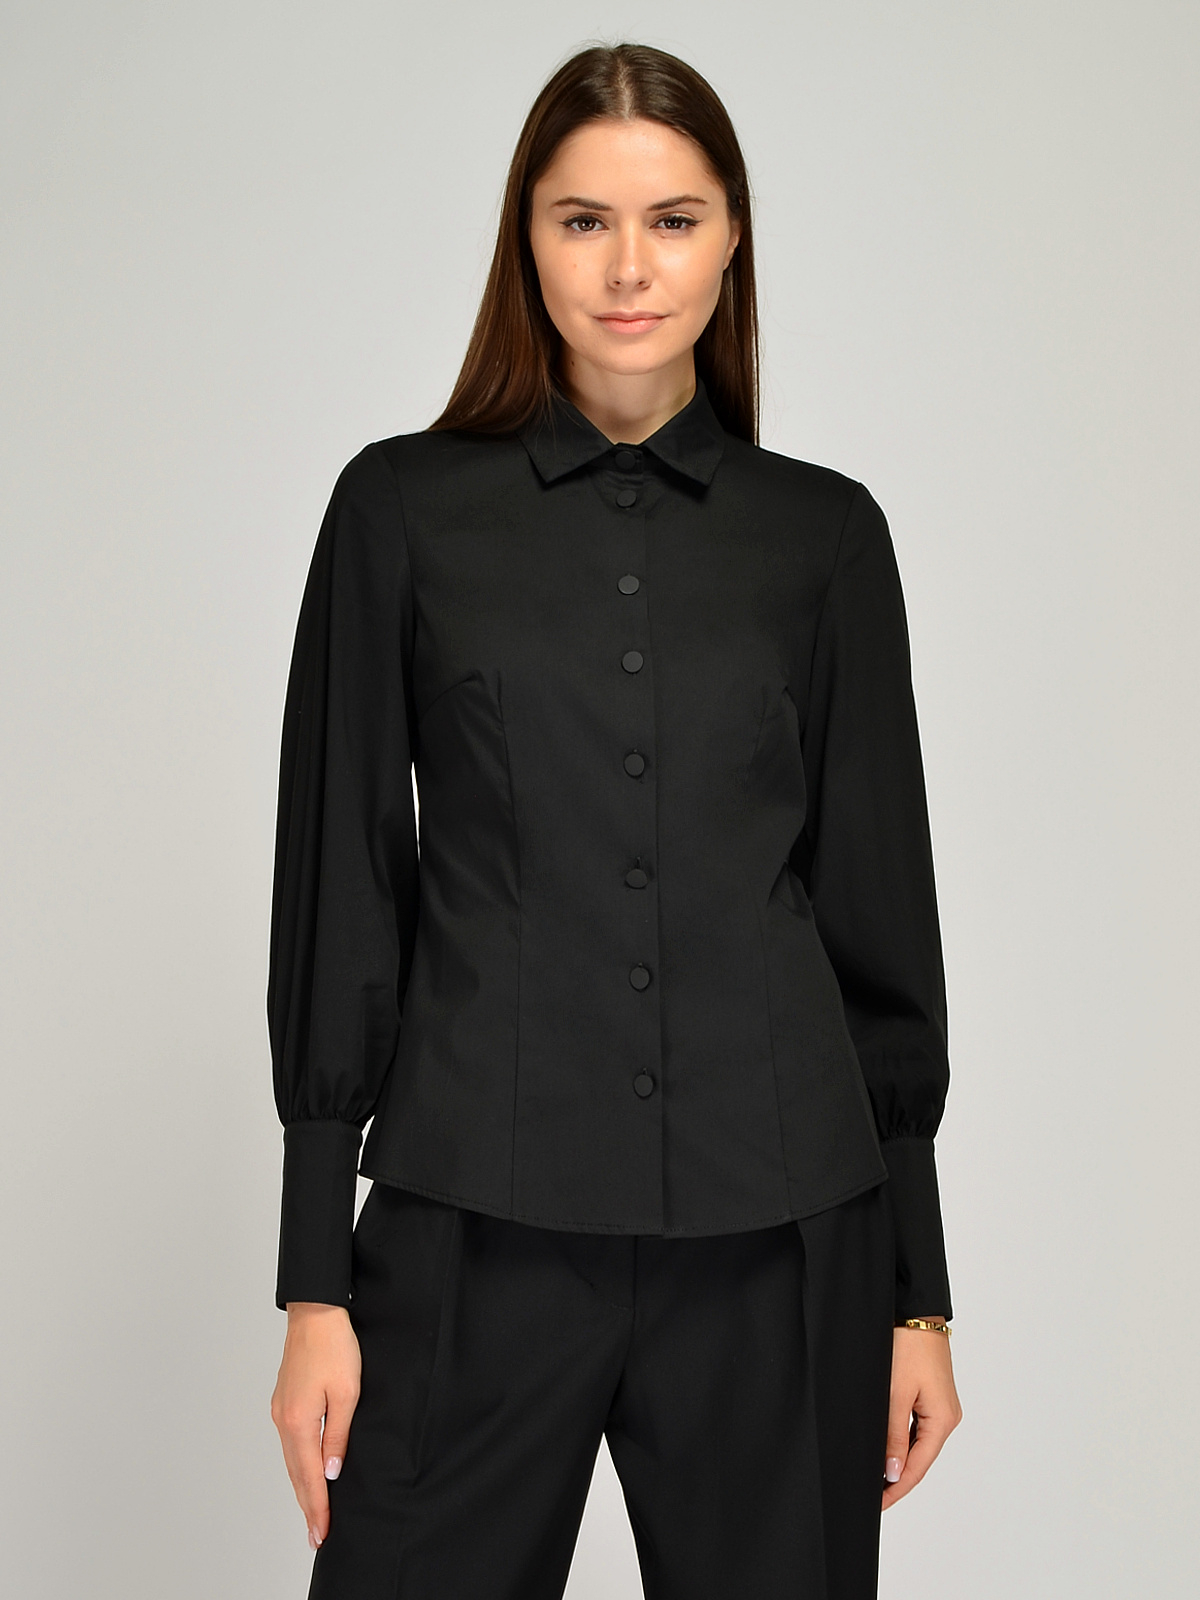 Блуза женская Каляев 66837 черная 54 RU